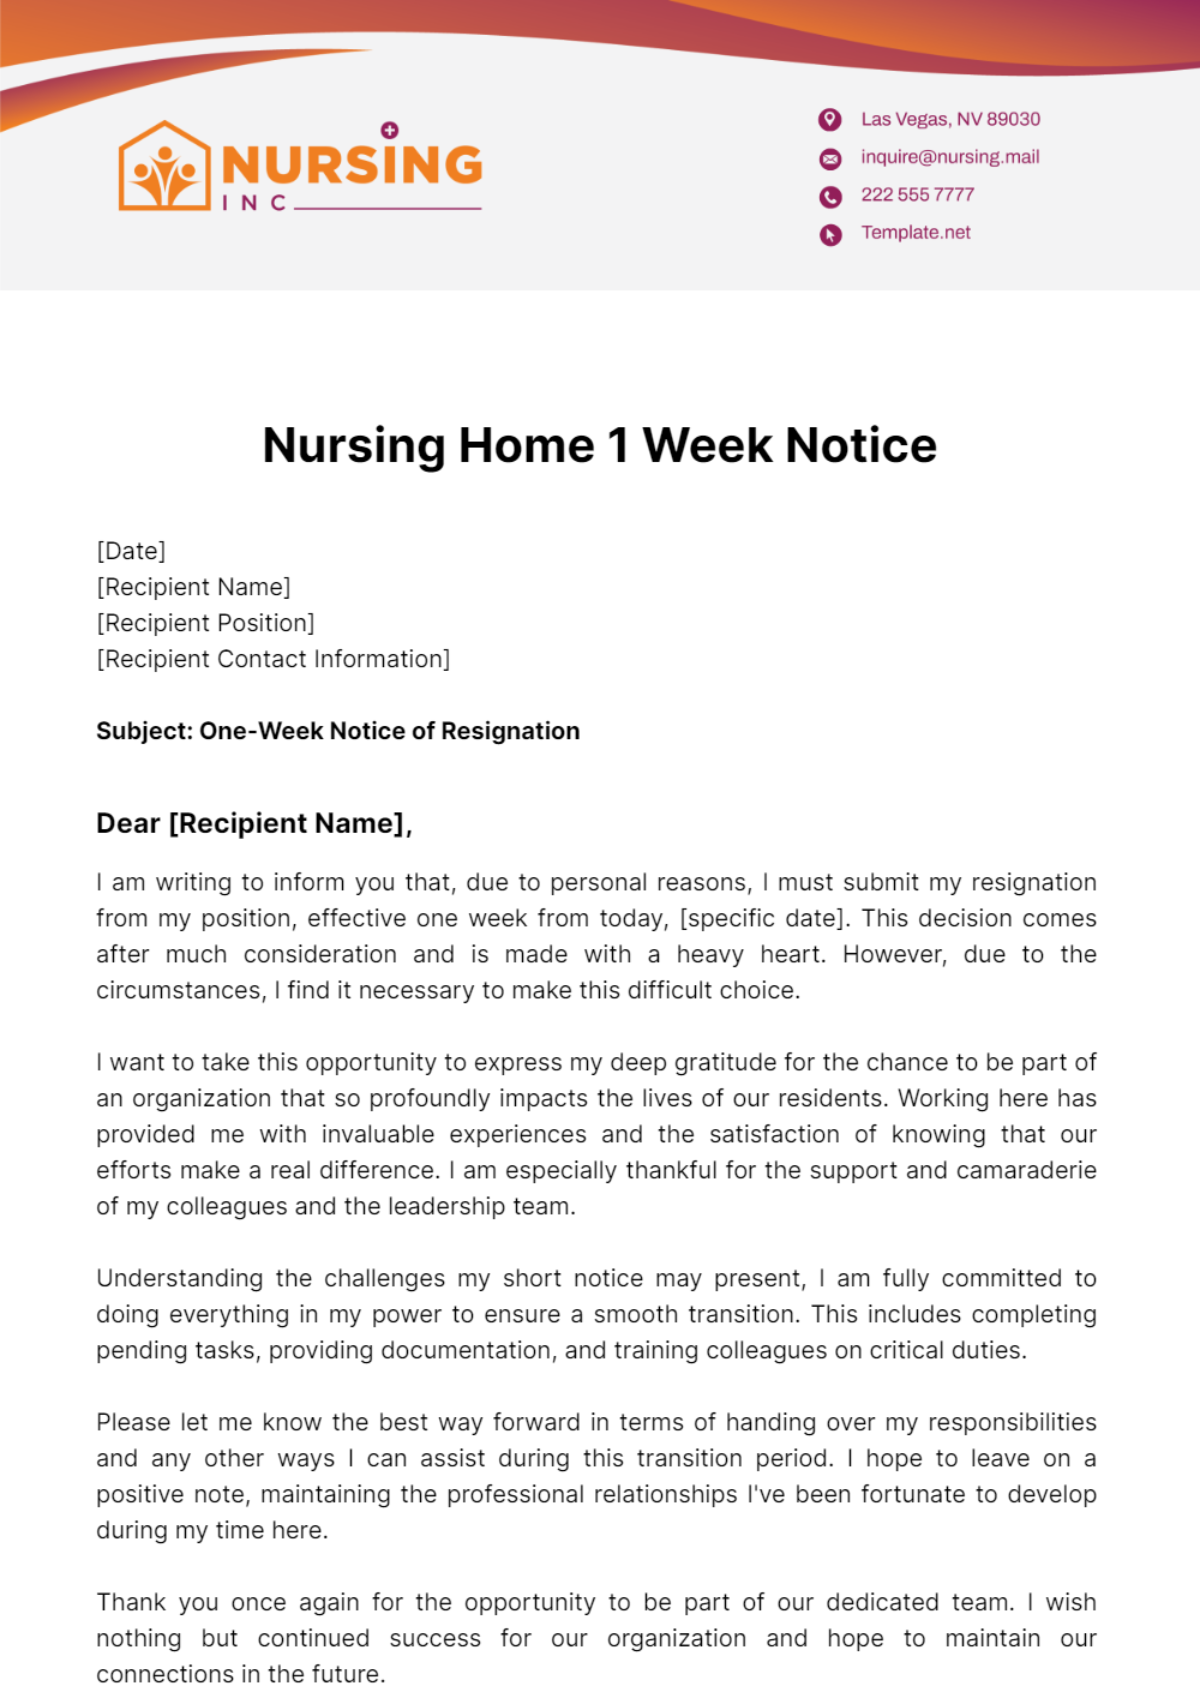 Nursing Home 1 Week Notice Template